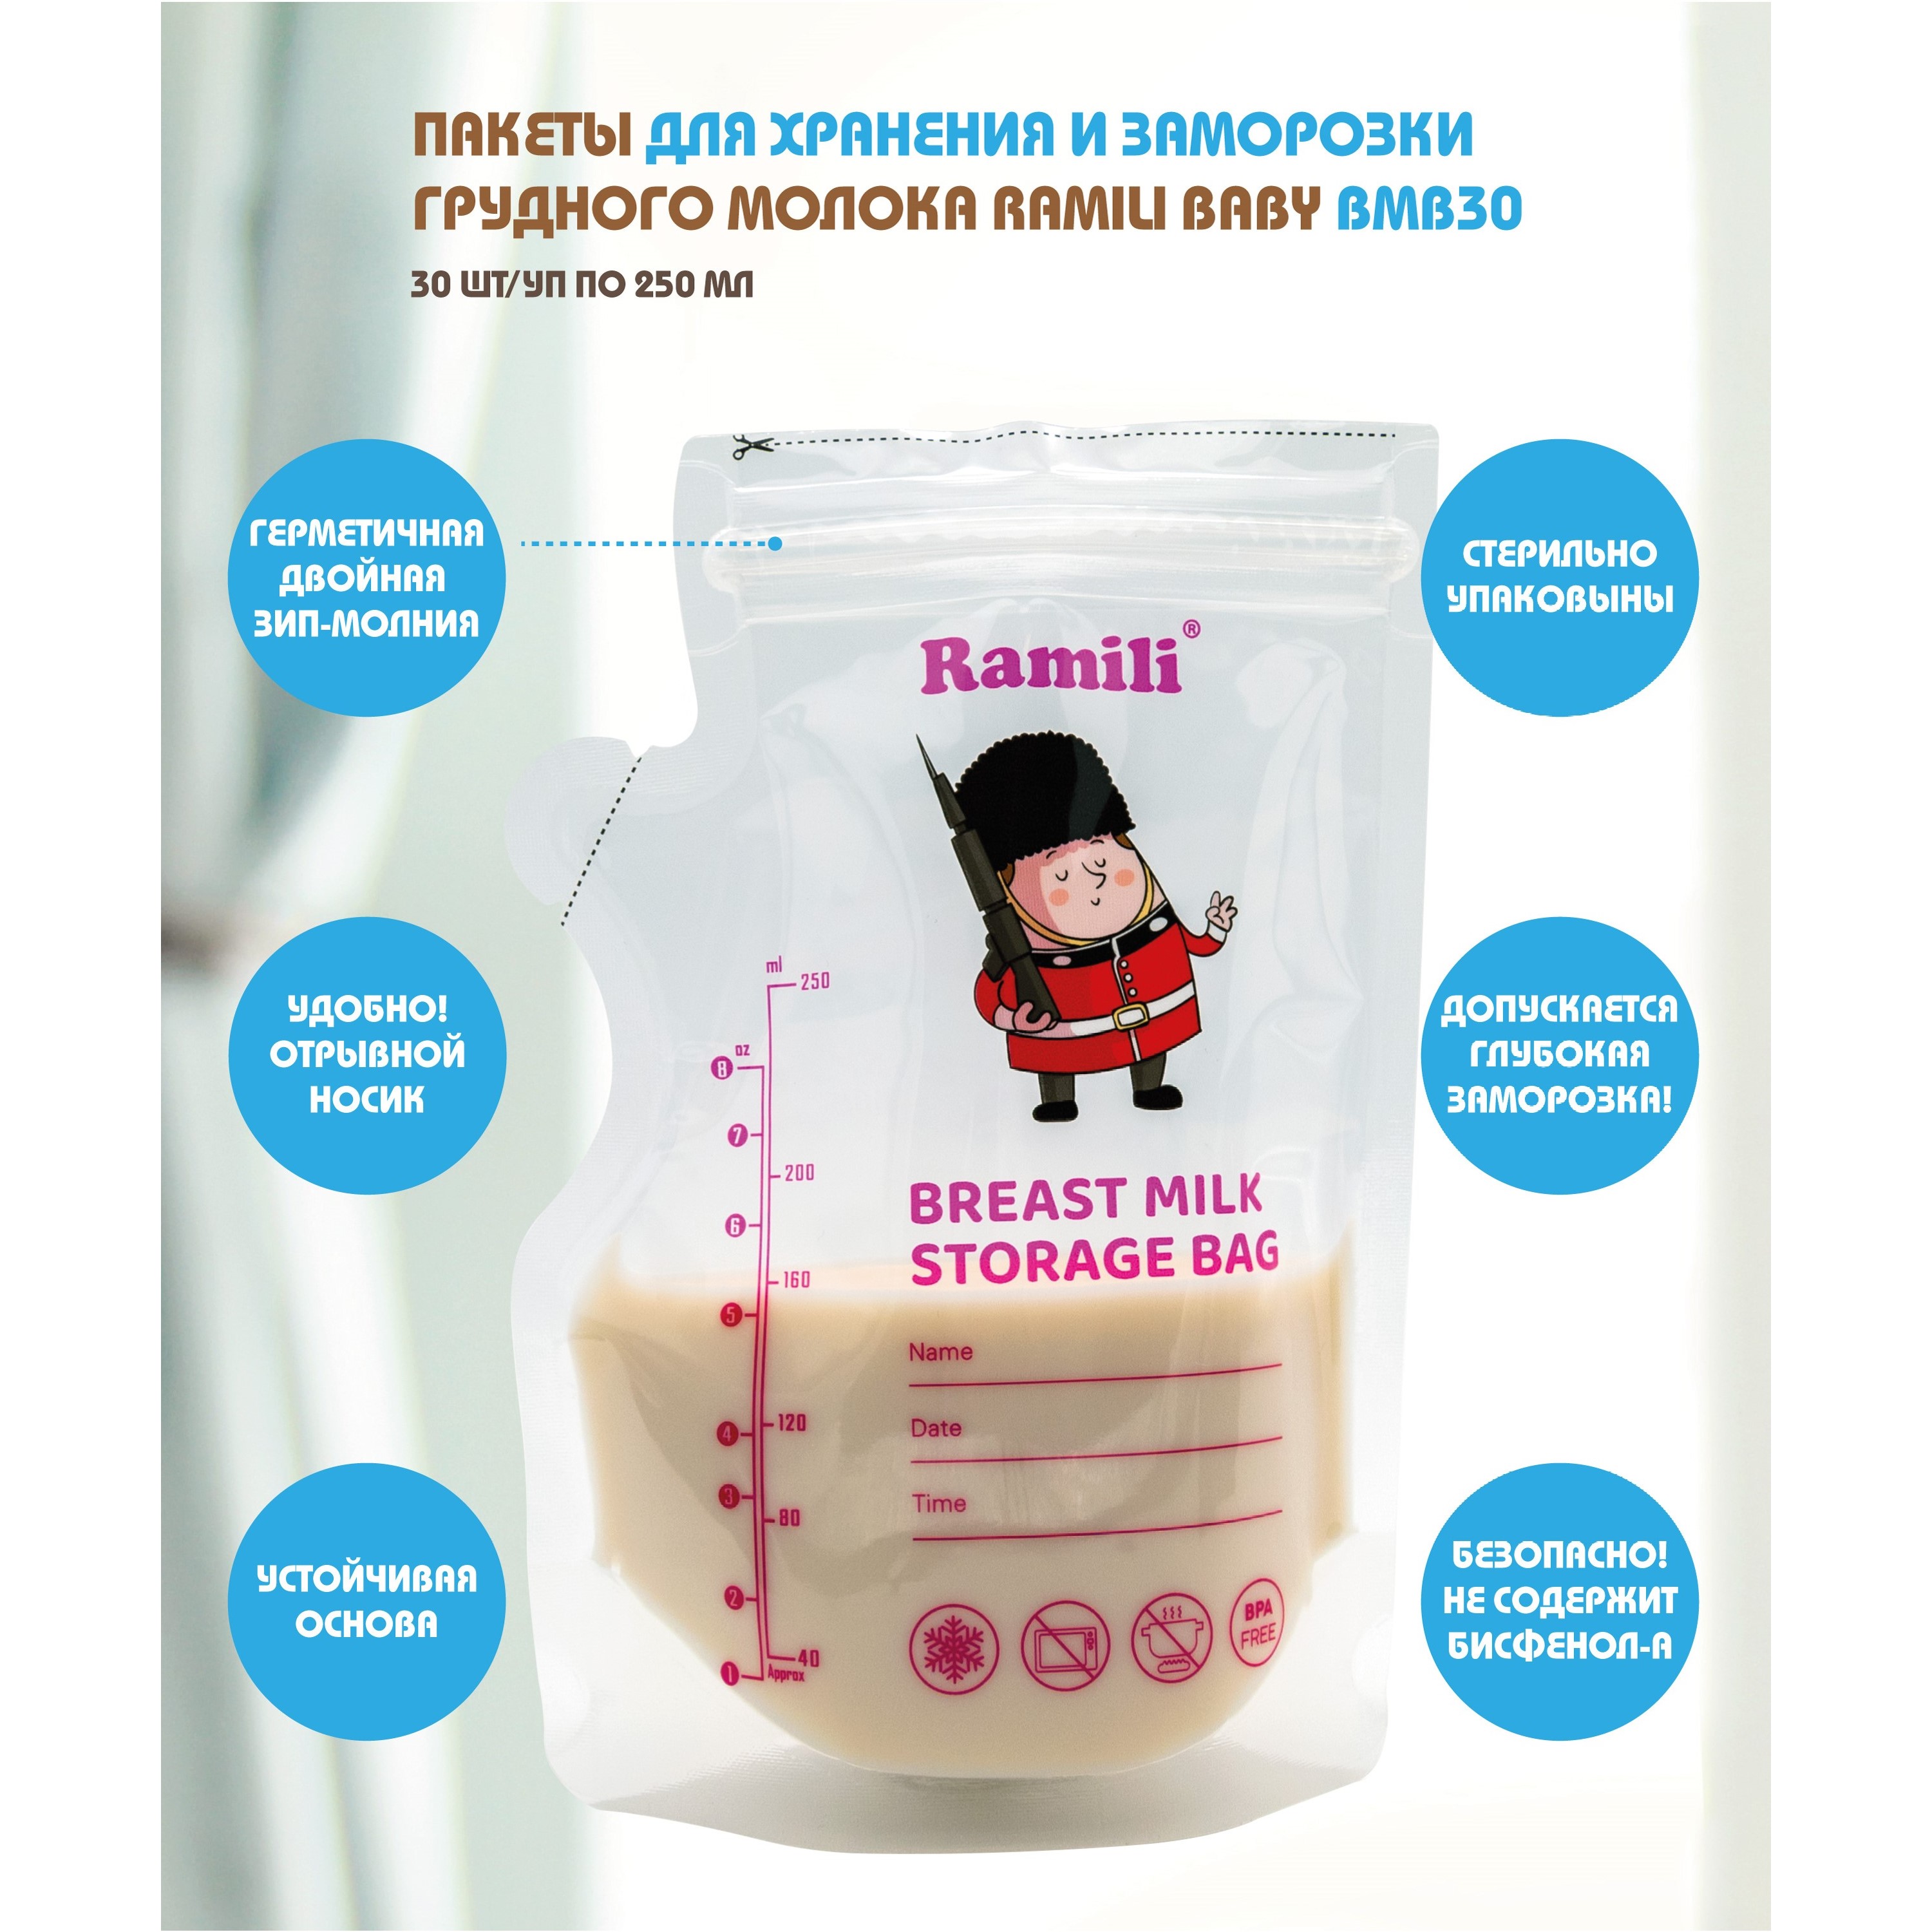 Пакеты для хранения и заморозки грудного молока Ramili Baby BMB30 пакеты для заморозки продуктов уфа пак 3 литра 25×35 см 35 шт с клипсами